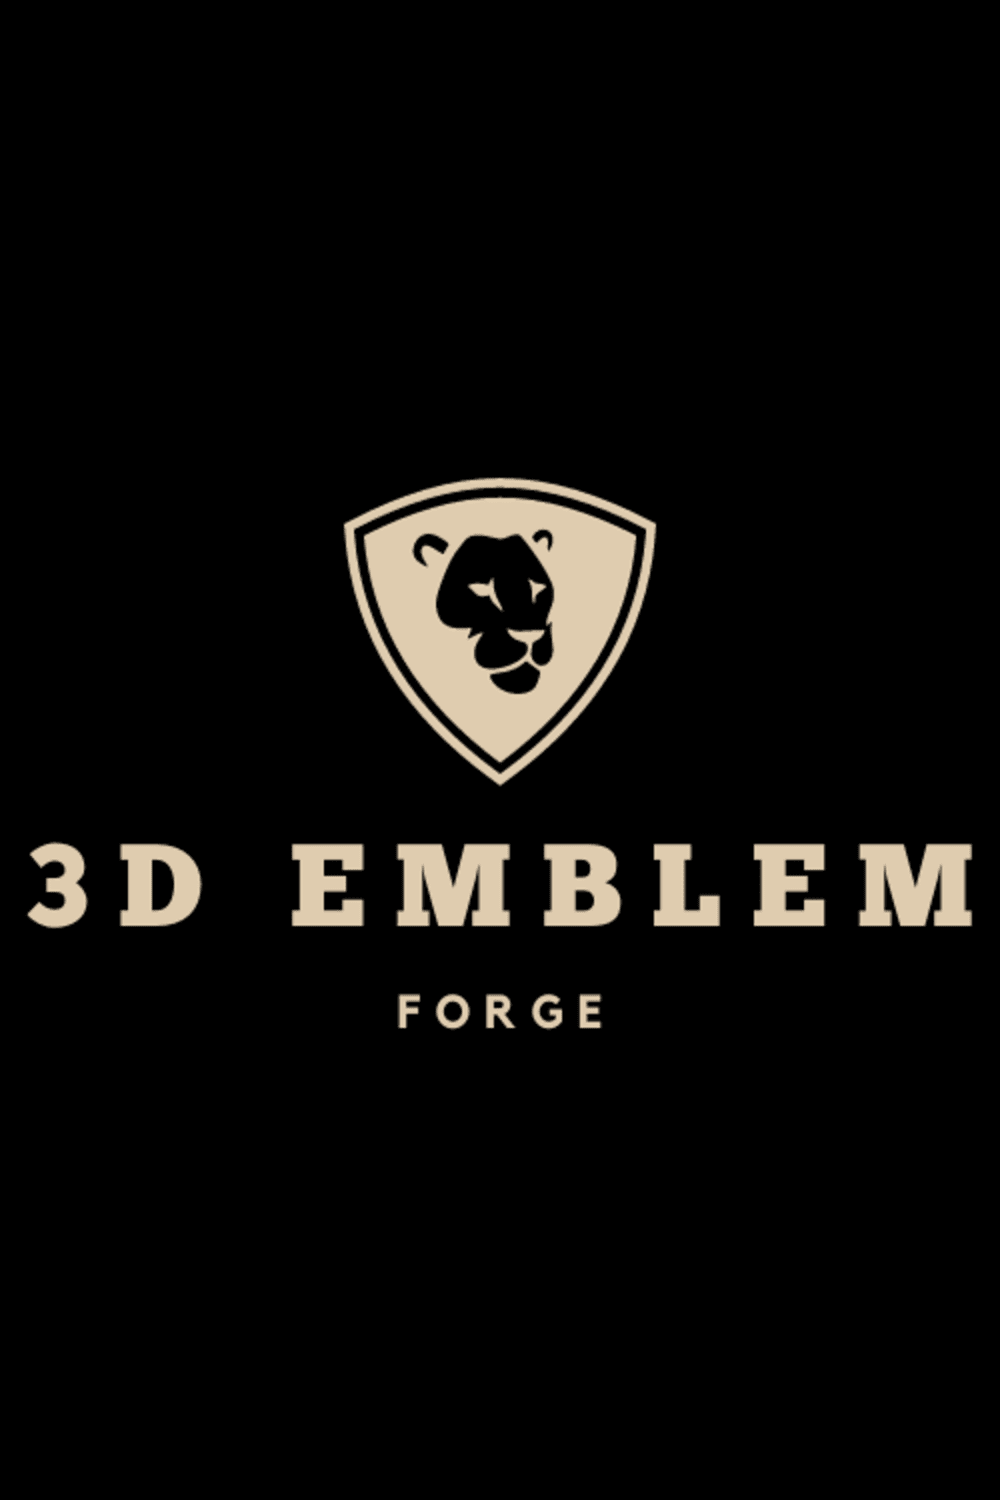 3D EMBLEM FORGE LOGO DESIGN pinterest preview image.